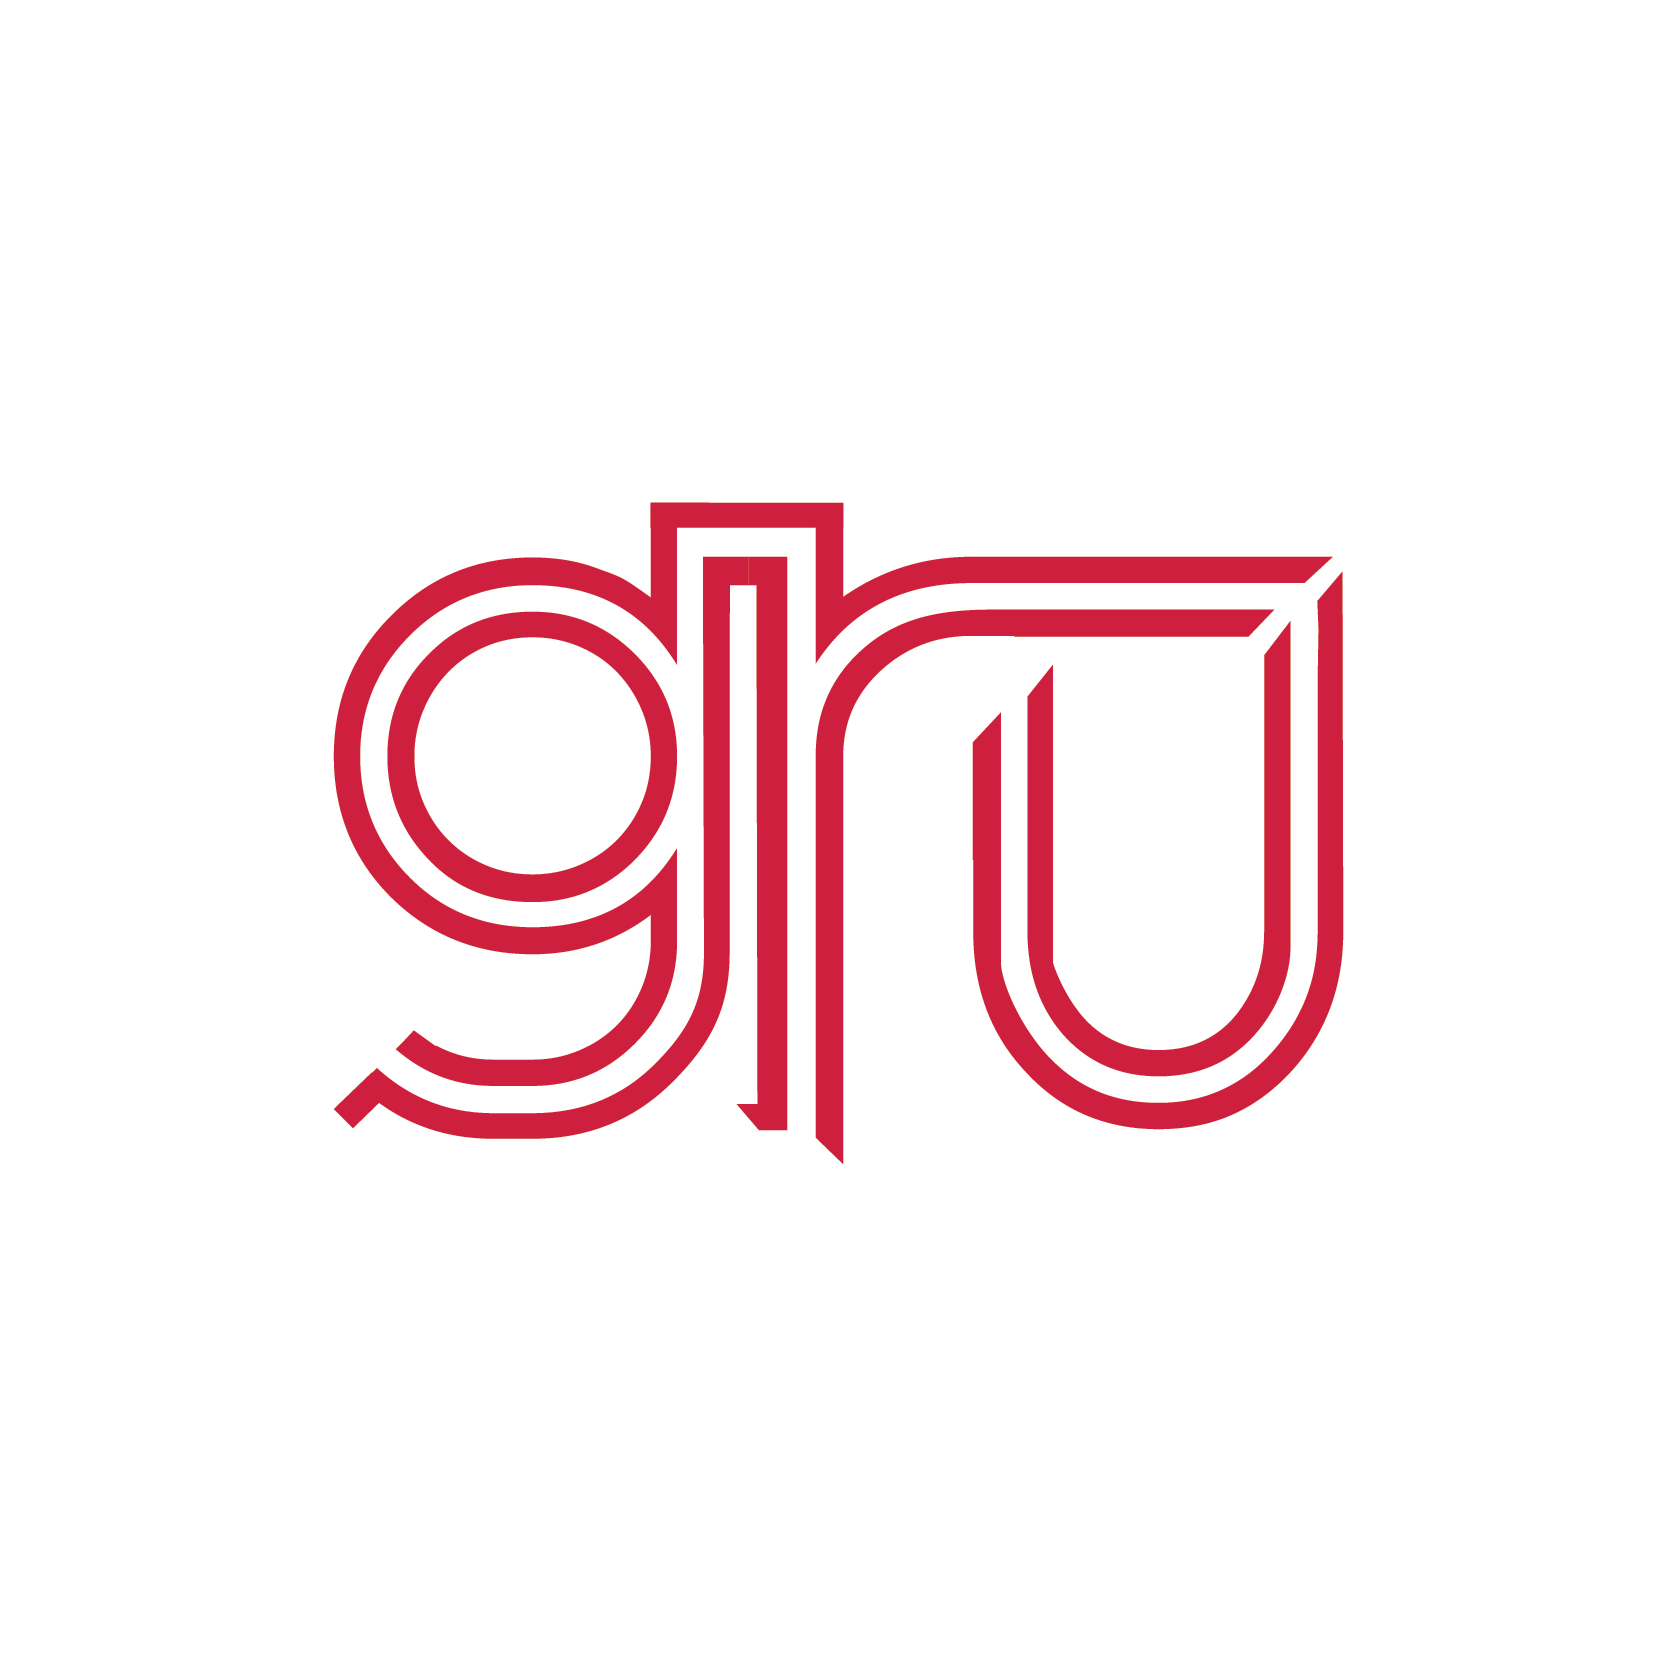 gru. logo design. 2008